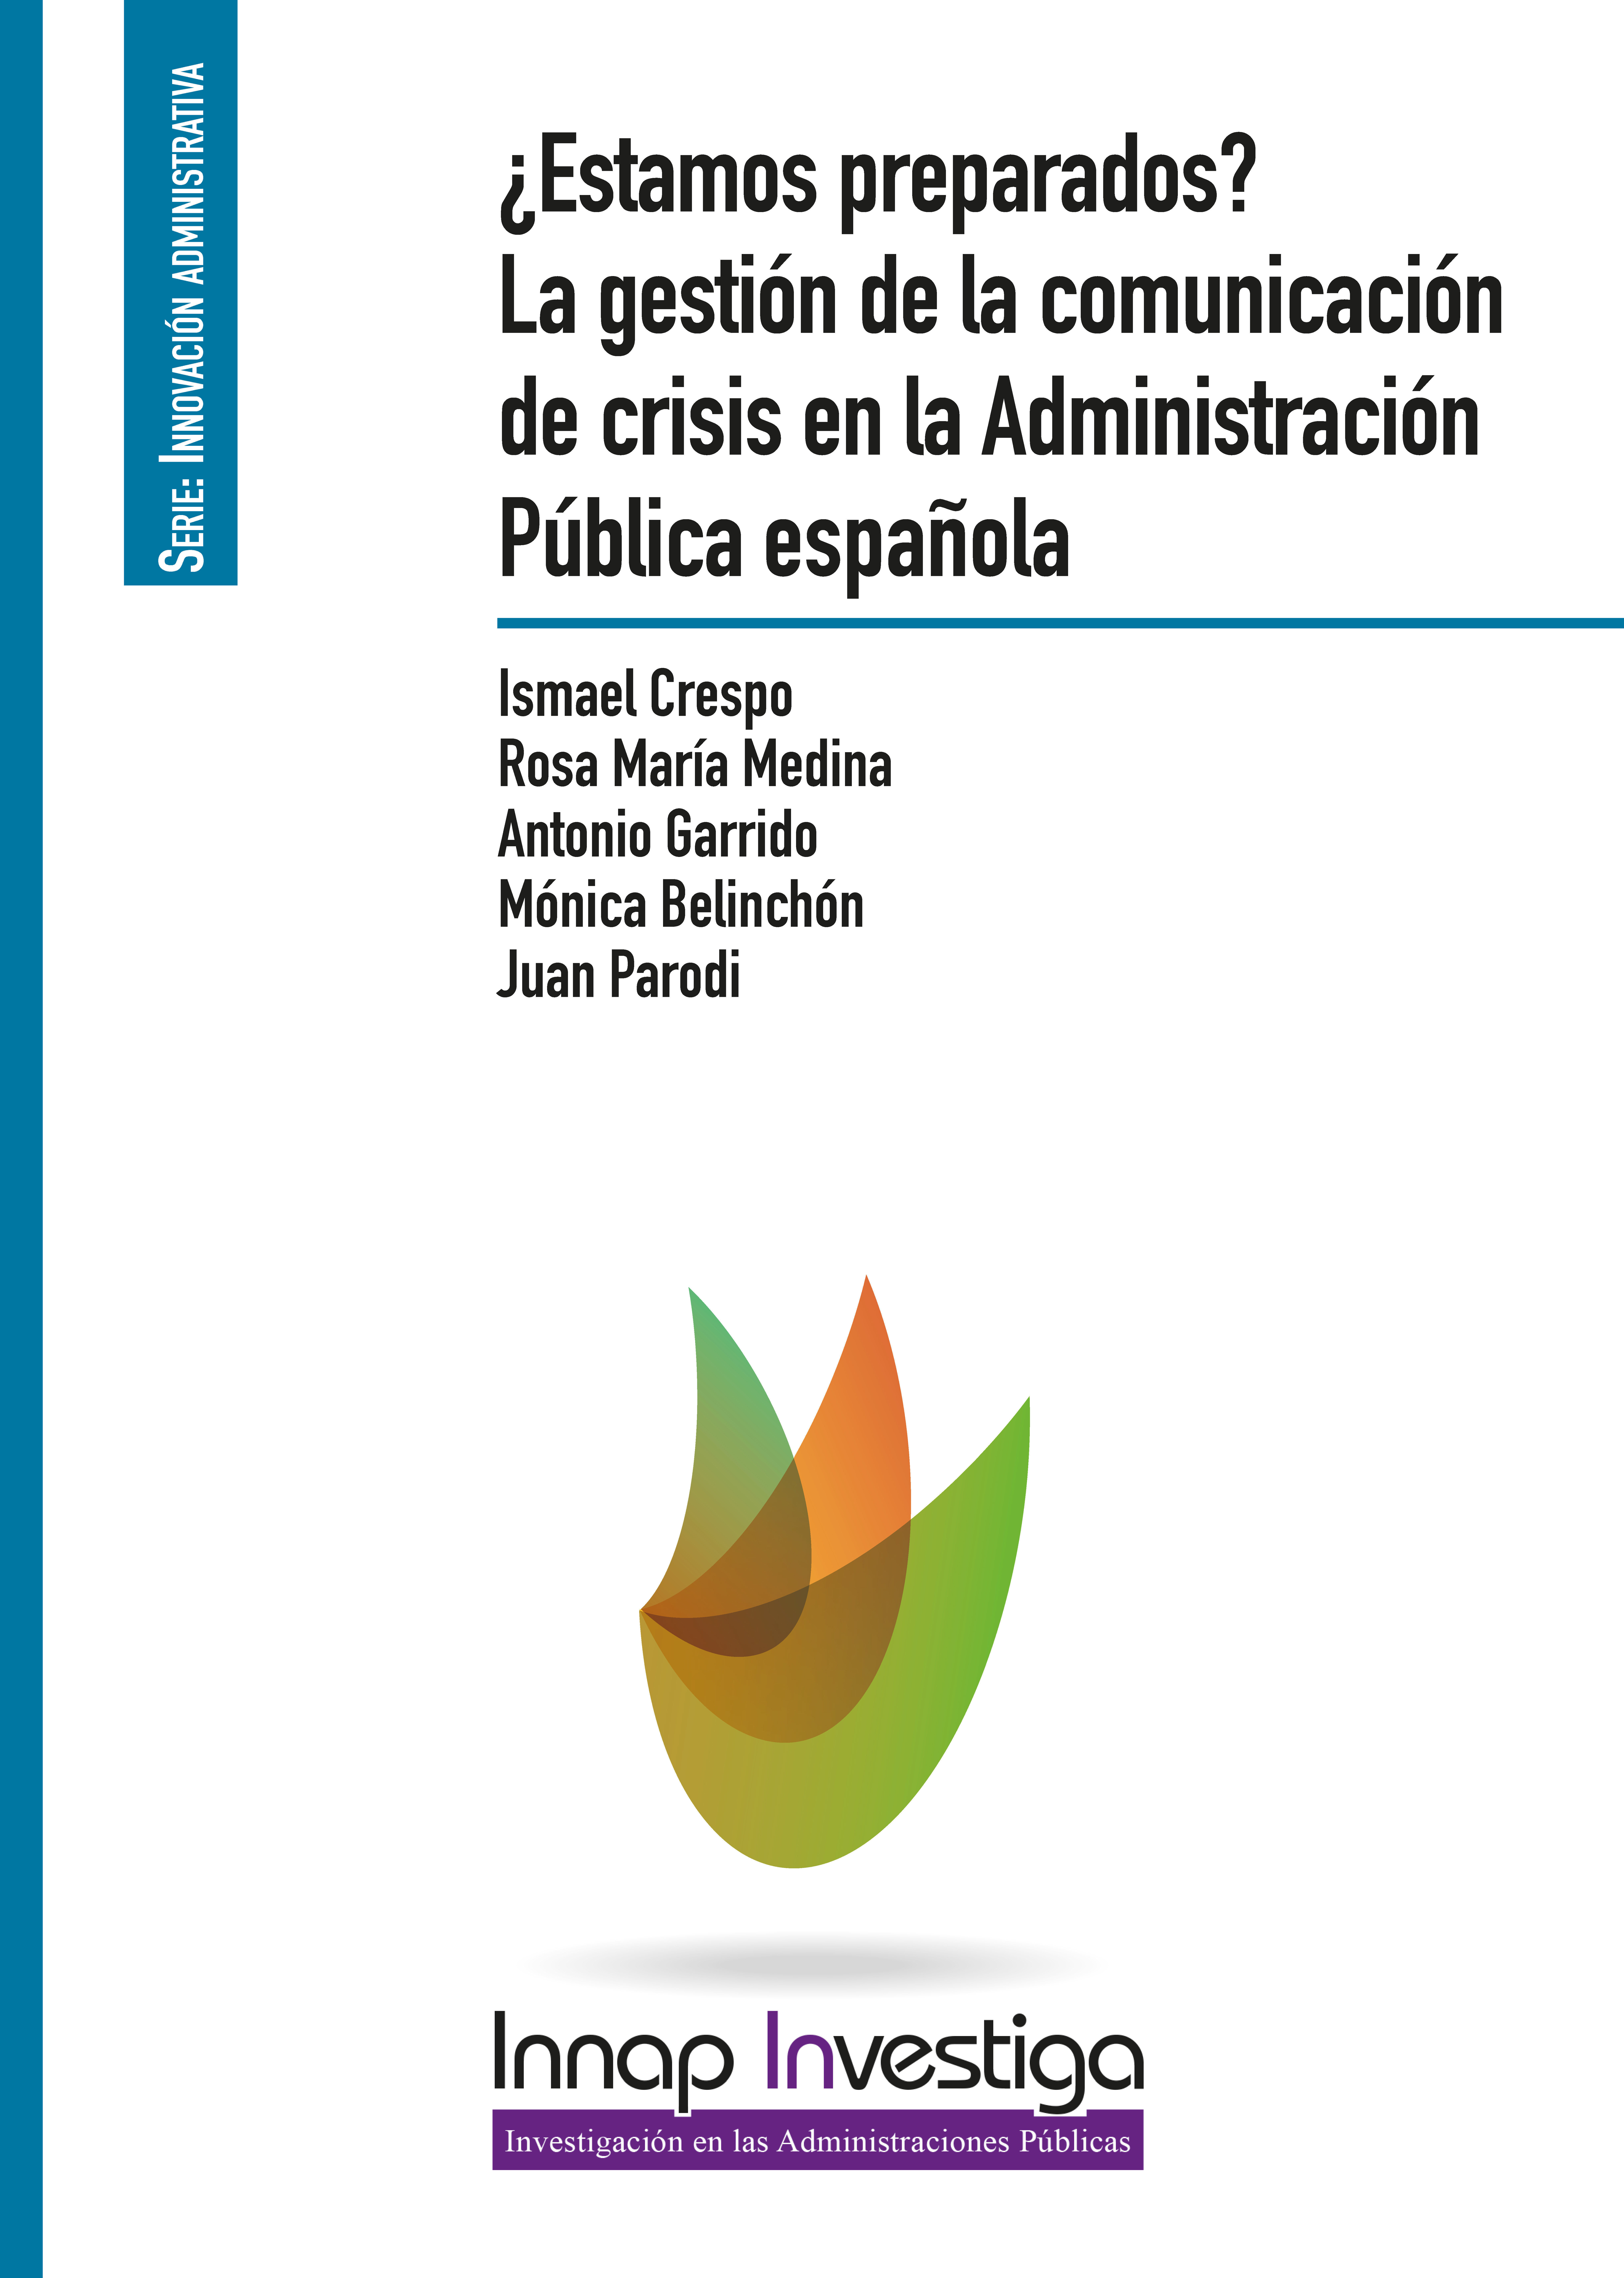 ¿Estamos preparados? La gestión de la comunicación de crisis en la Administración Pública española 